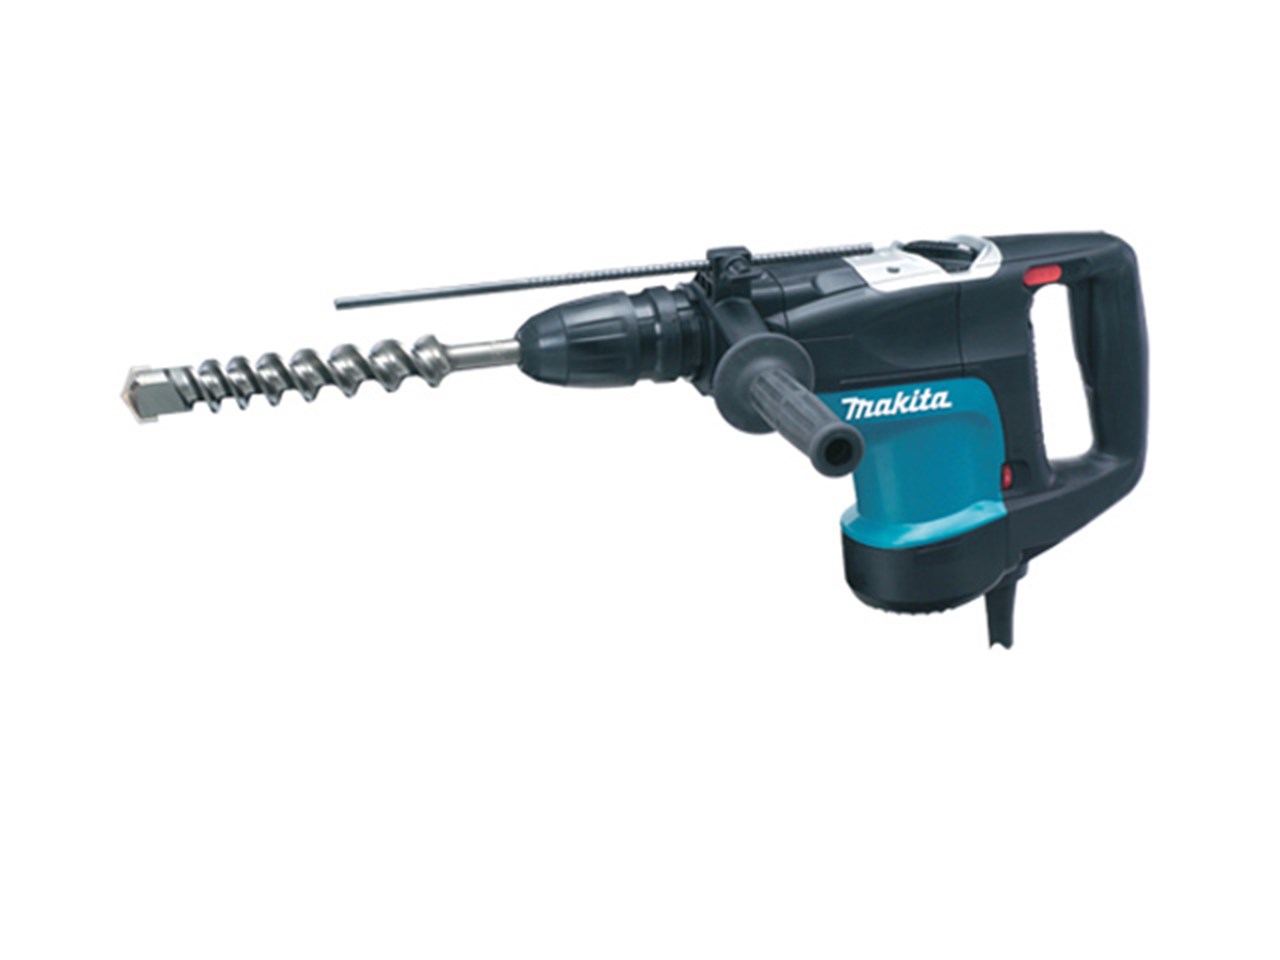  HR4001C 240v 40mm SDS Max Rotary Hammer Drill